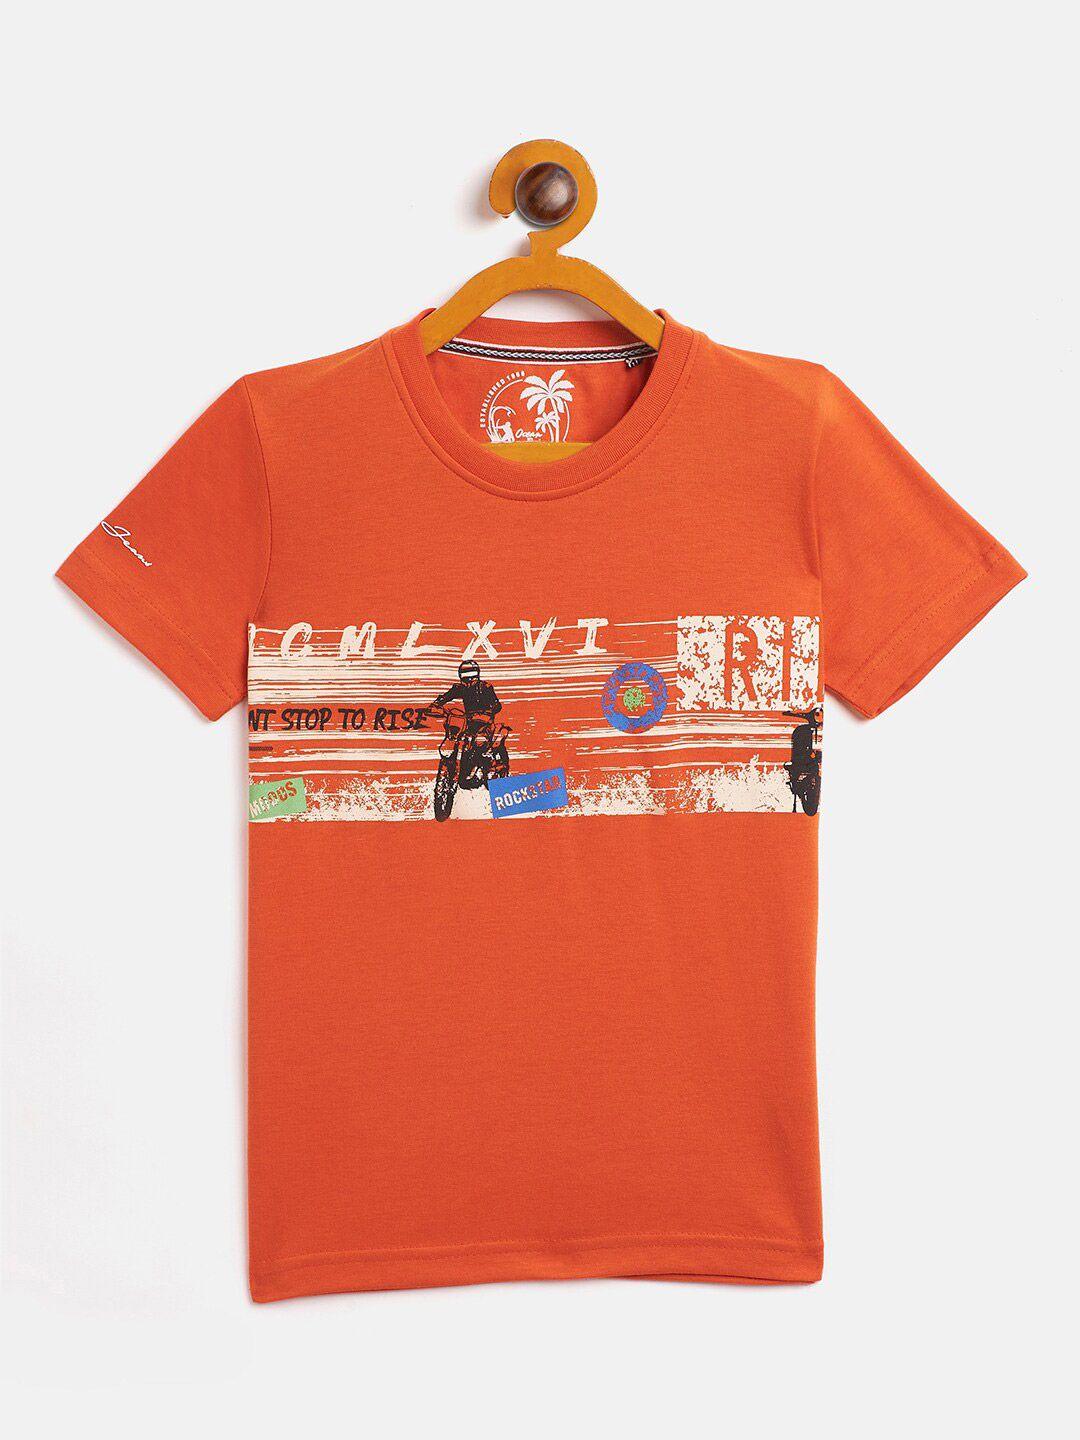 duke boys orange printed t-shirt